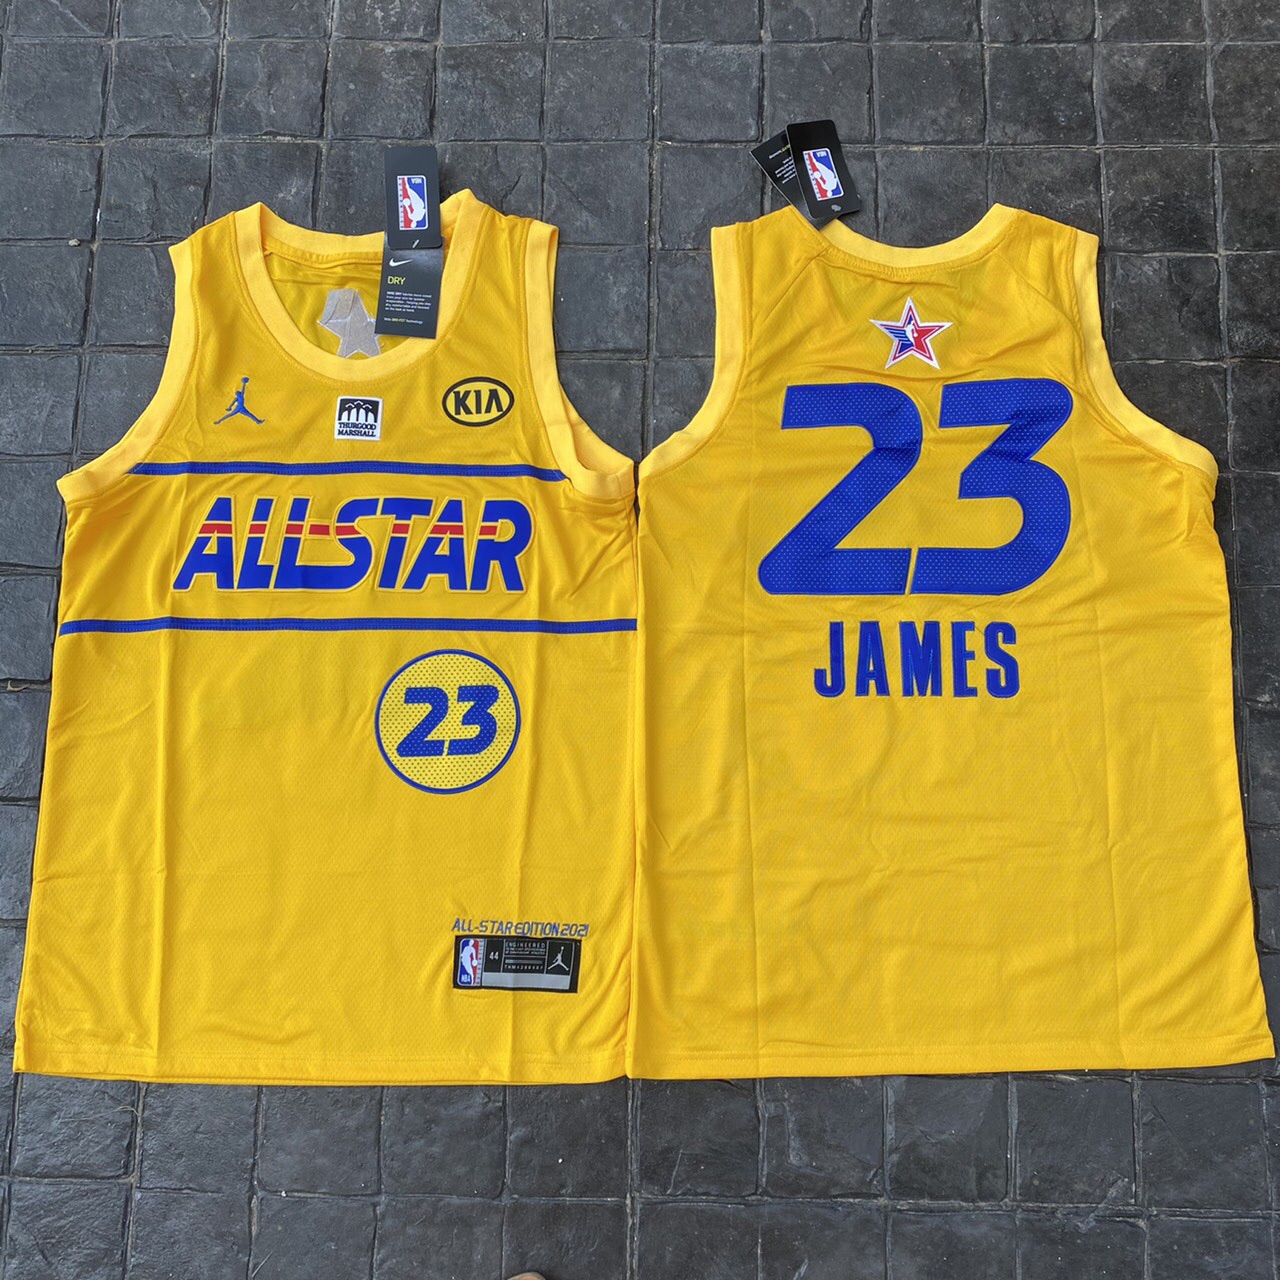 เสื้อบาสเกตบอลbasketball.jerseys(พร้อมจัดส่ง)#ALL-STAR.2021.James.23.